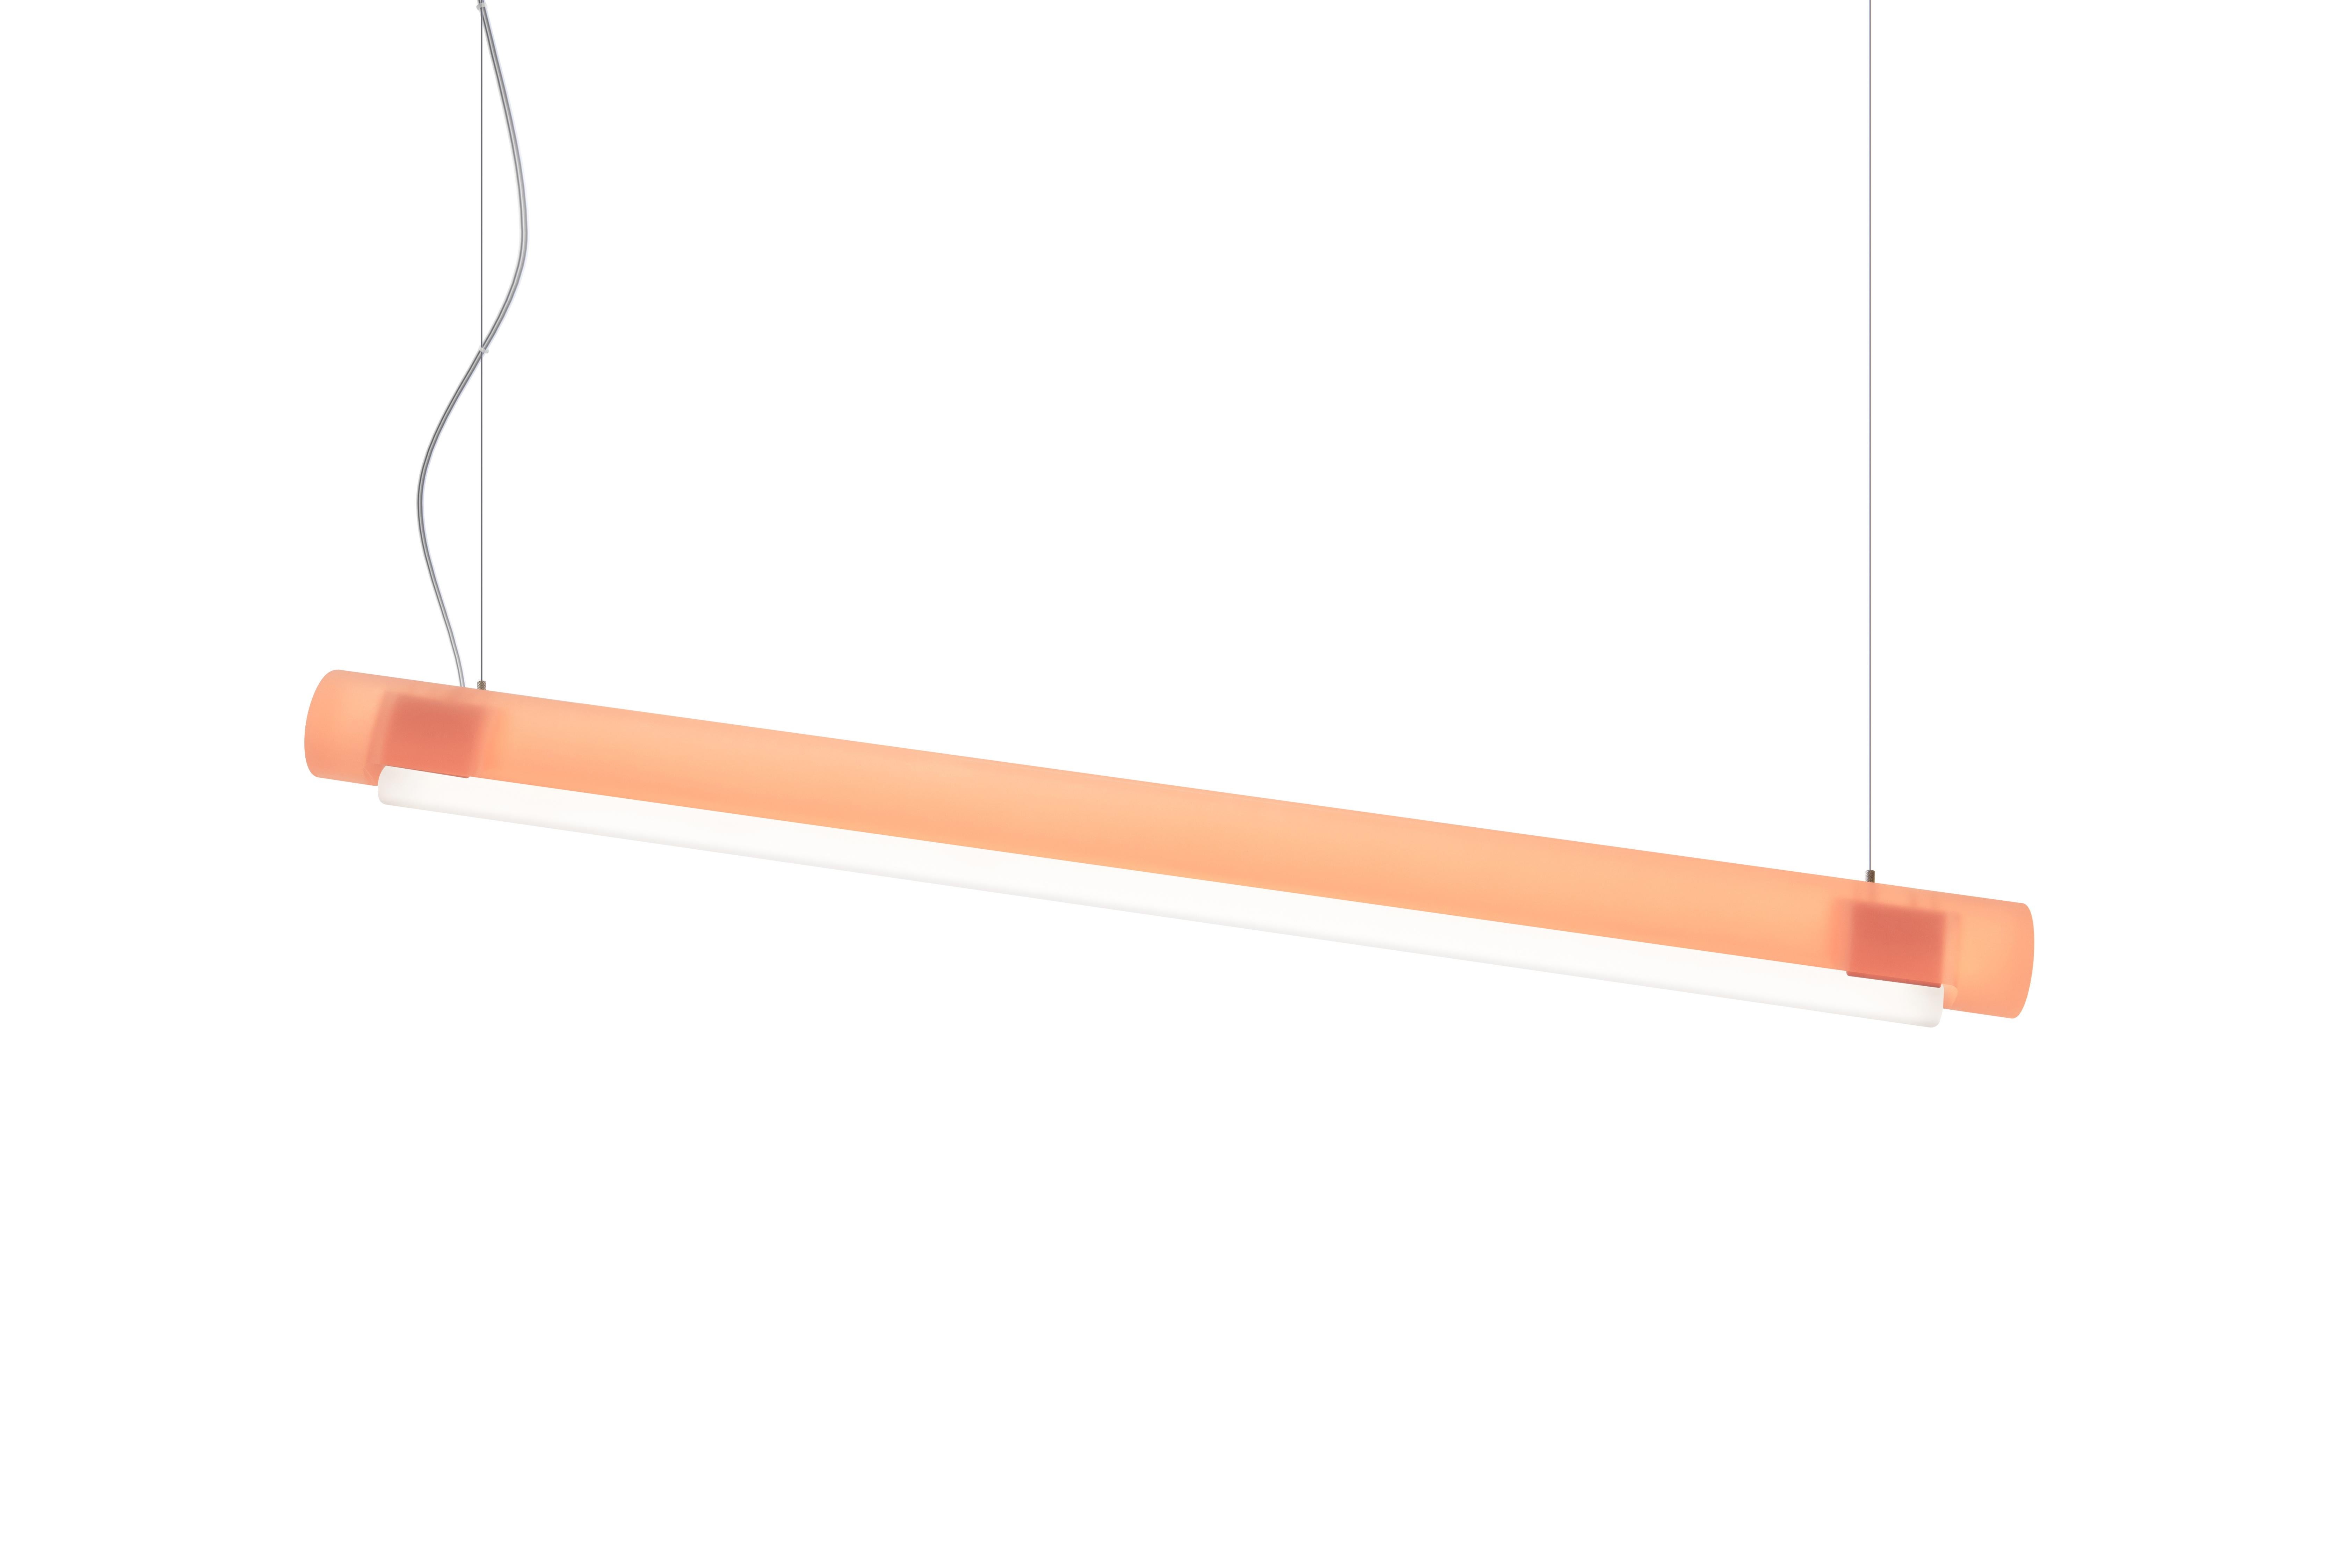 Der aufgehängte Zylinderstab der Aura Light, der Marcelis' Fachwissen über Farben nutzt, kann allein stehen oder als Teil einer Gruppe wirken. Das über einen Meter lange Design besteht aus einem Bio-Epoxidharz, das aus Nebenprodukten der